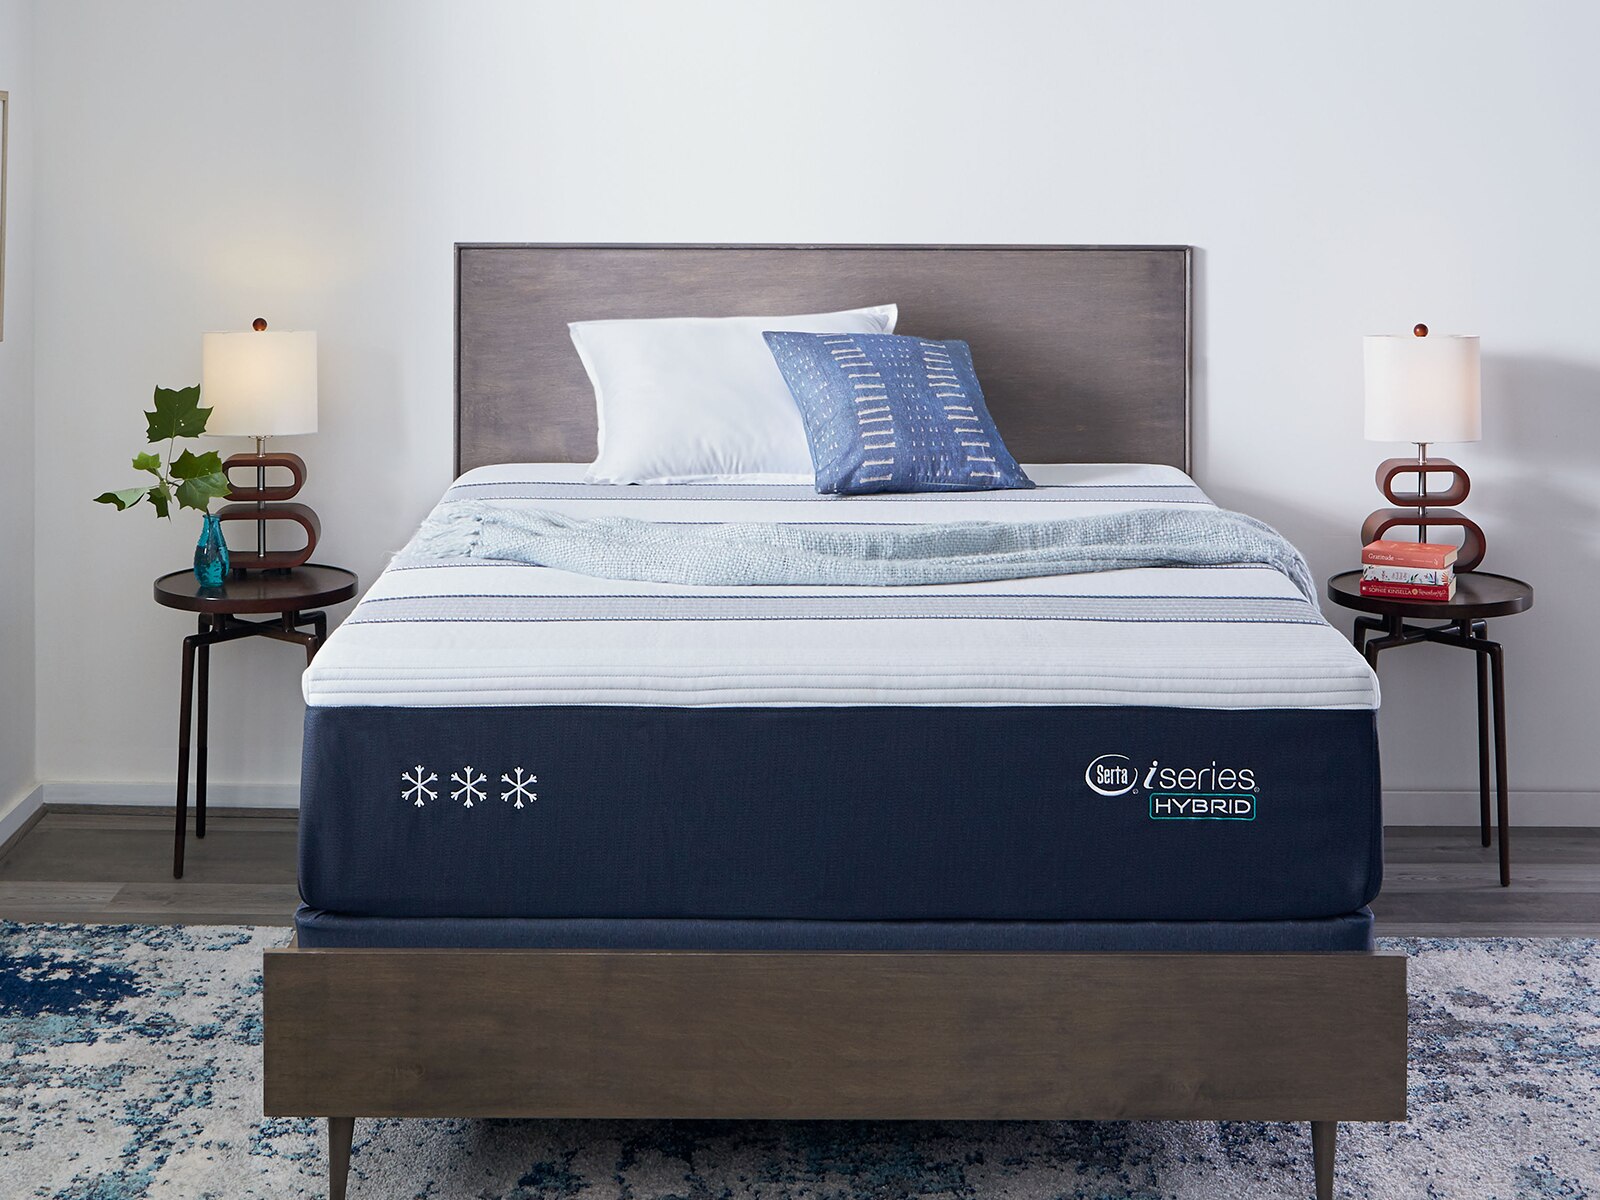 serta iseries hybrid 100 firm mattress reviews